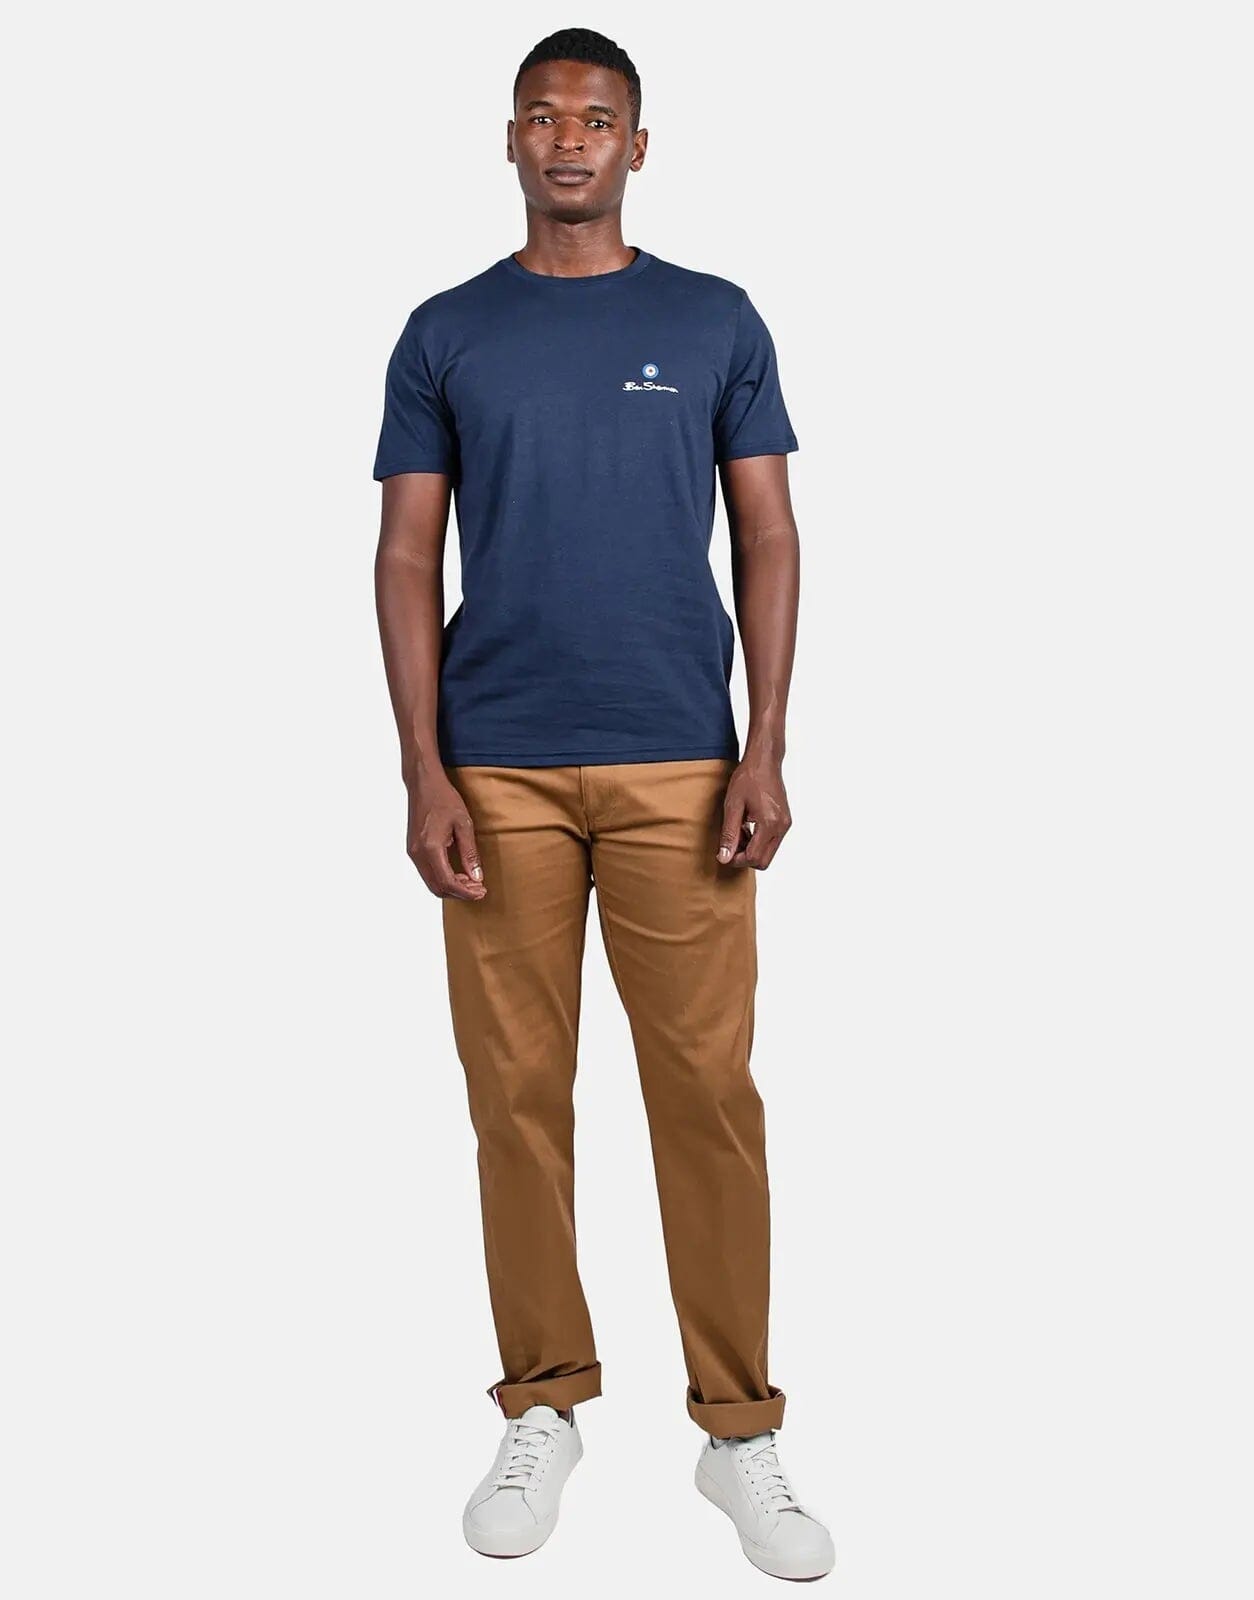 Ben Sherman Blue Target Print T-Shirt - Subwear